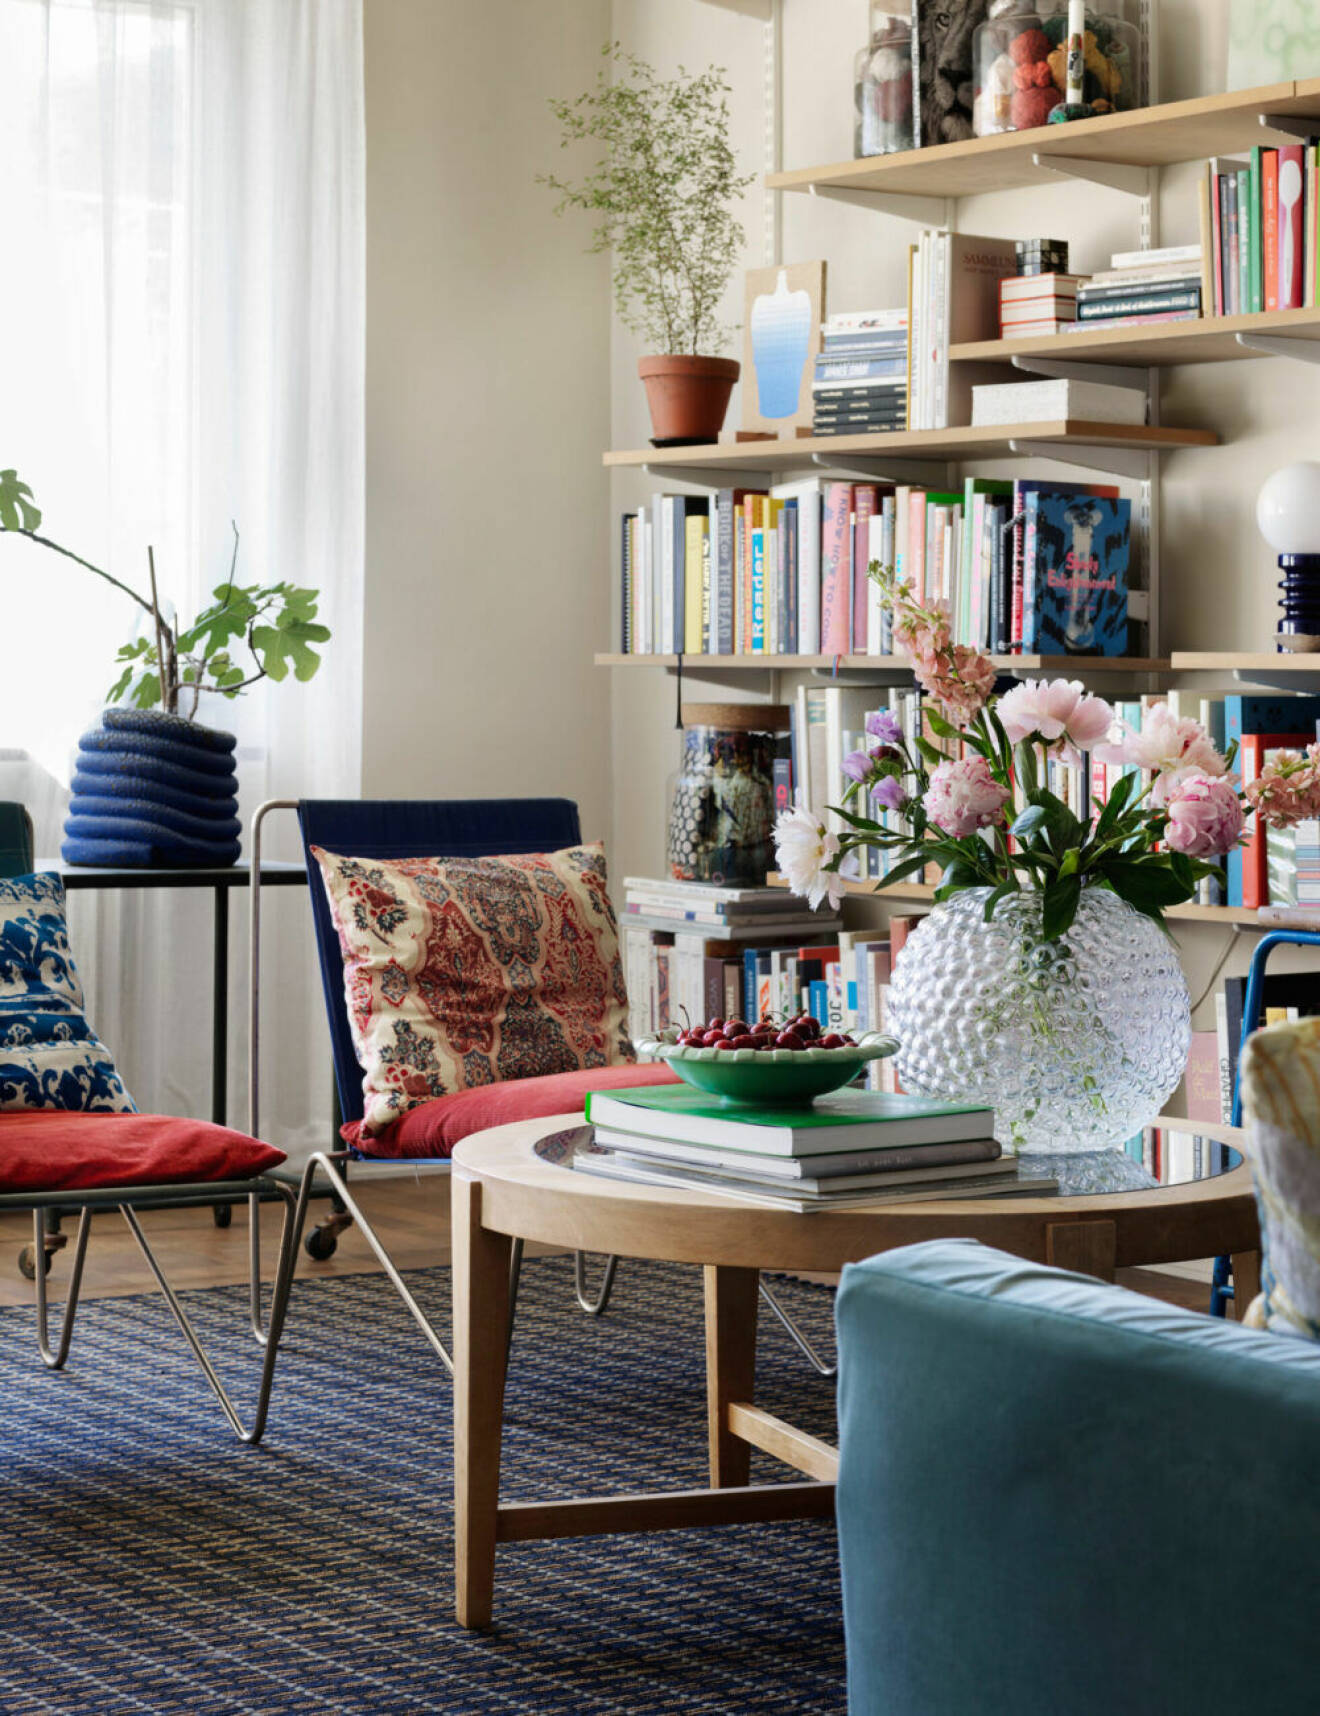 Färgglad lägenhet i Stockholm, runt träbord och bokhylla i samma träslag